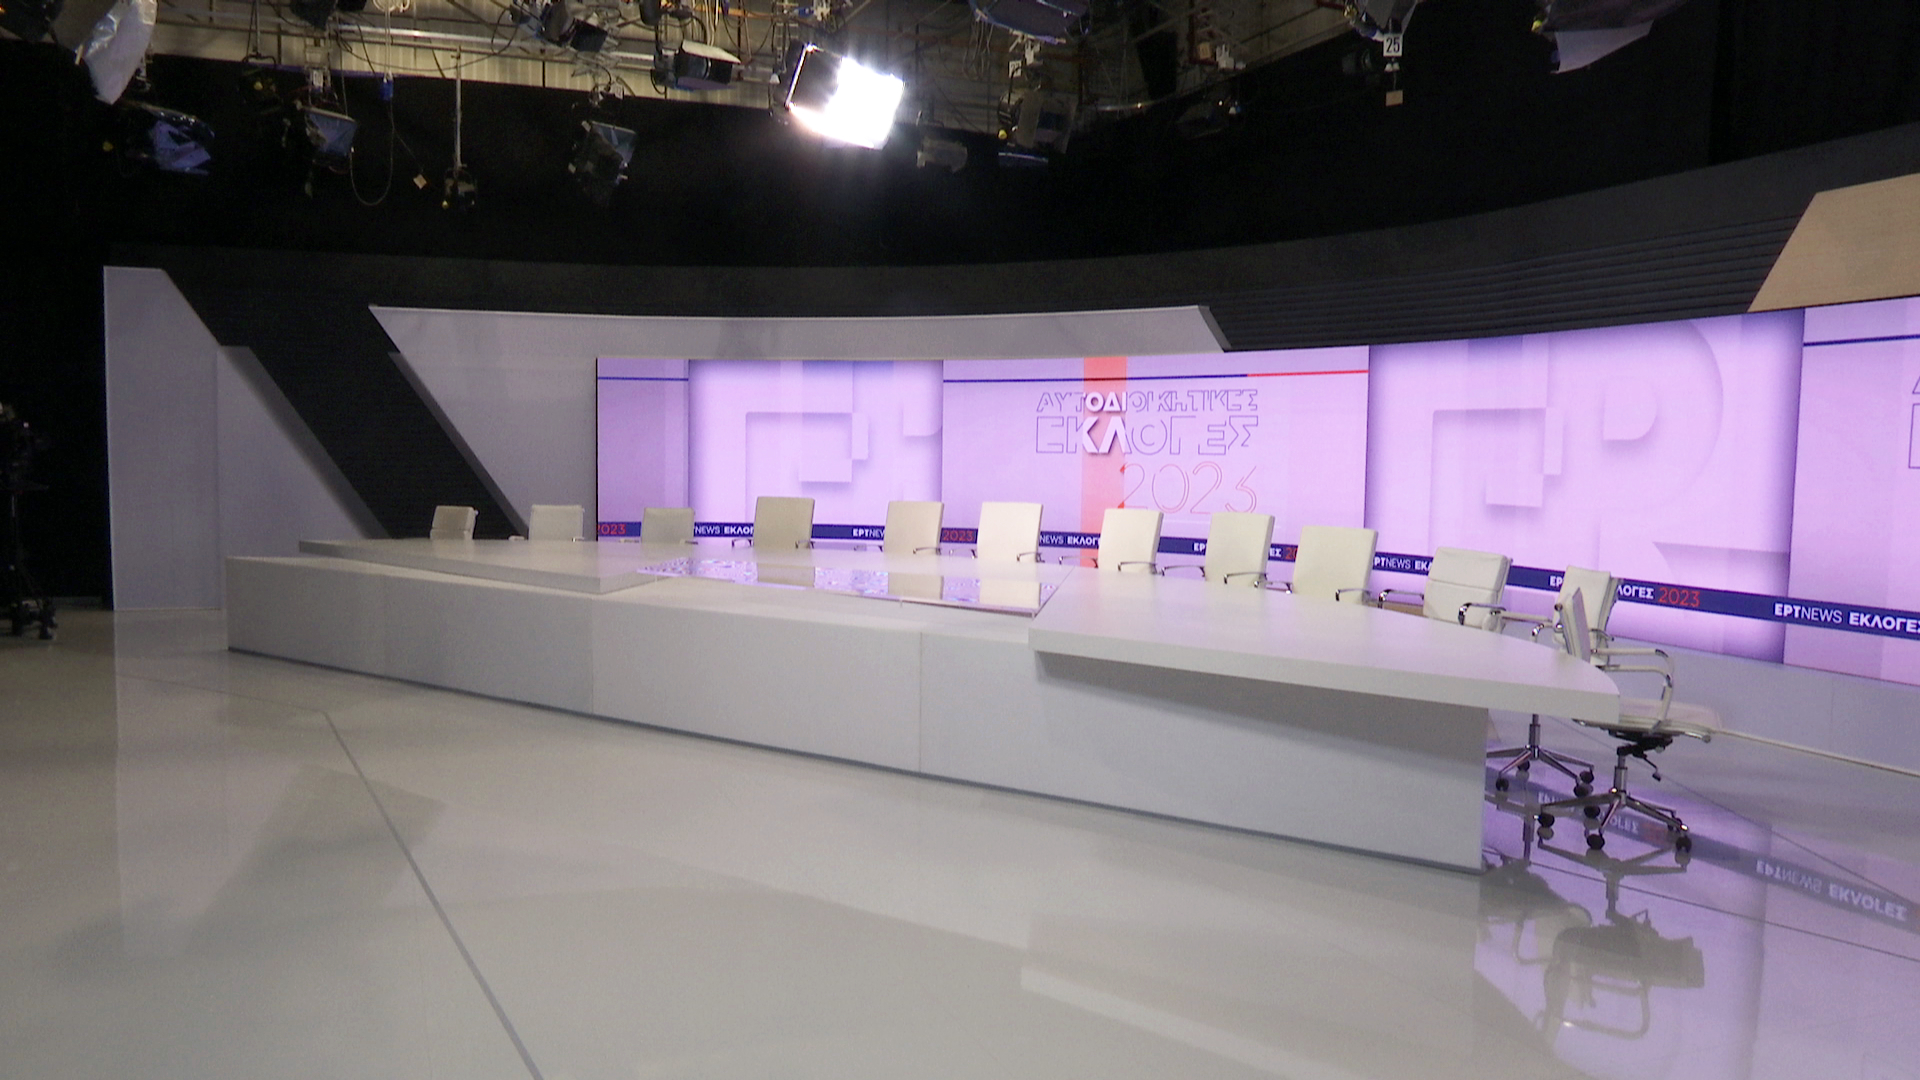 Αυτοδιοικητικές εκλογές στην ΕΡΤ: Συνεχής ενημέρωση την Κυριακή 8/10 από το επιτελείο της Δημόσιας Τηλεόρασης – Το πρόγραμμα